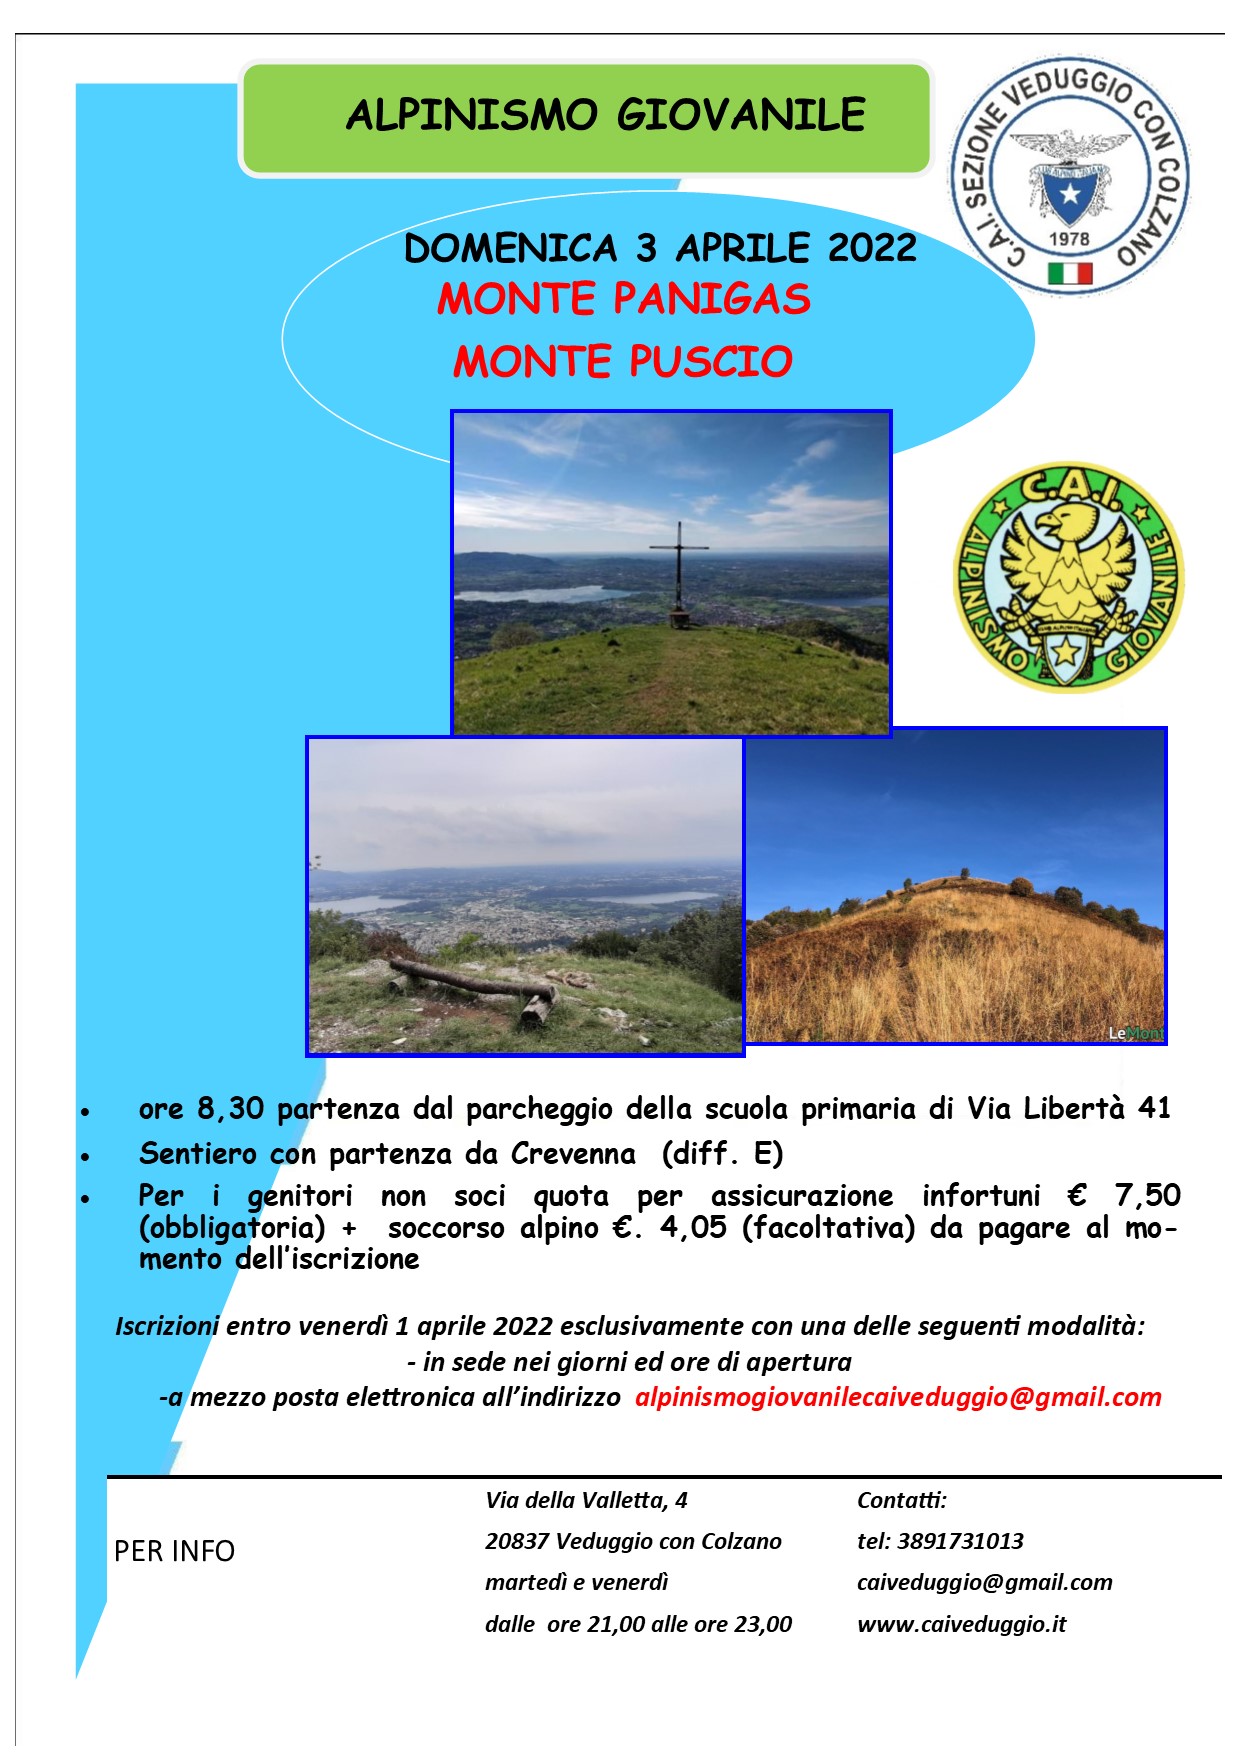 Domenica 3 aprile 2022 – Monte Panigas – Monte Puscio (Alpinismo Giovanile)